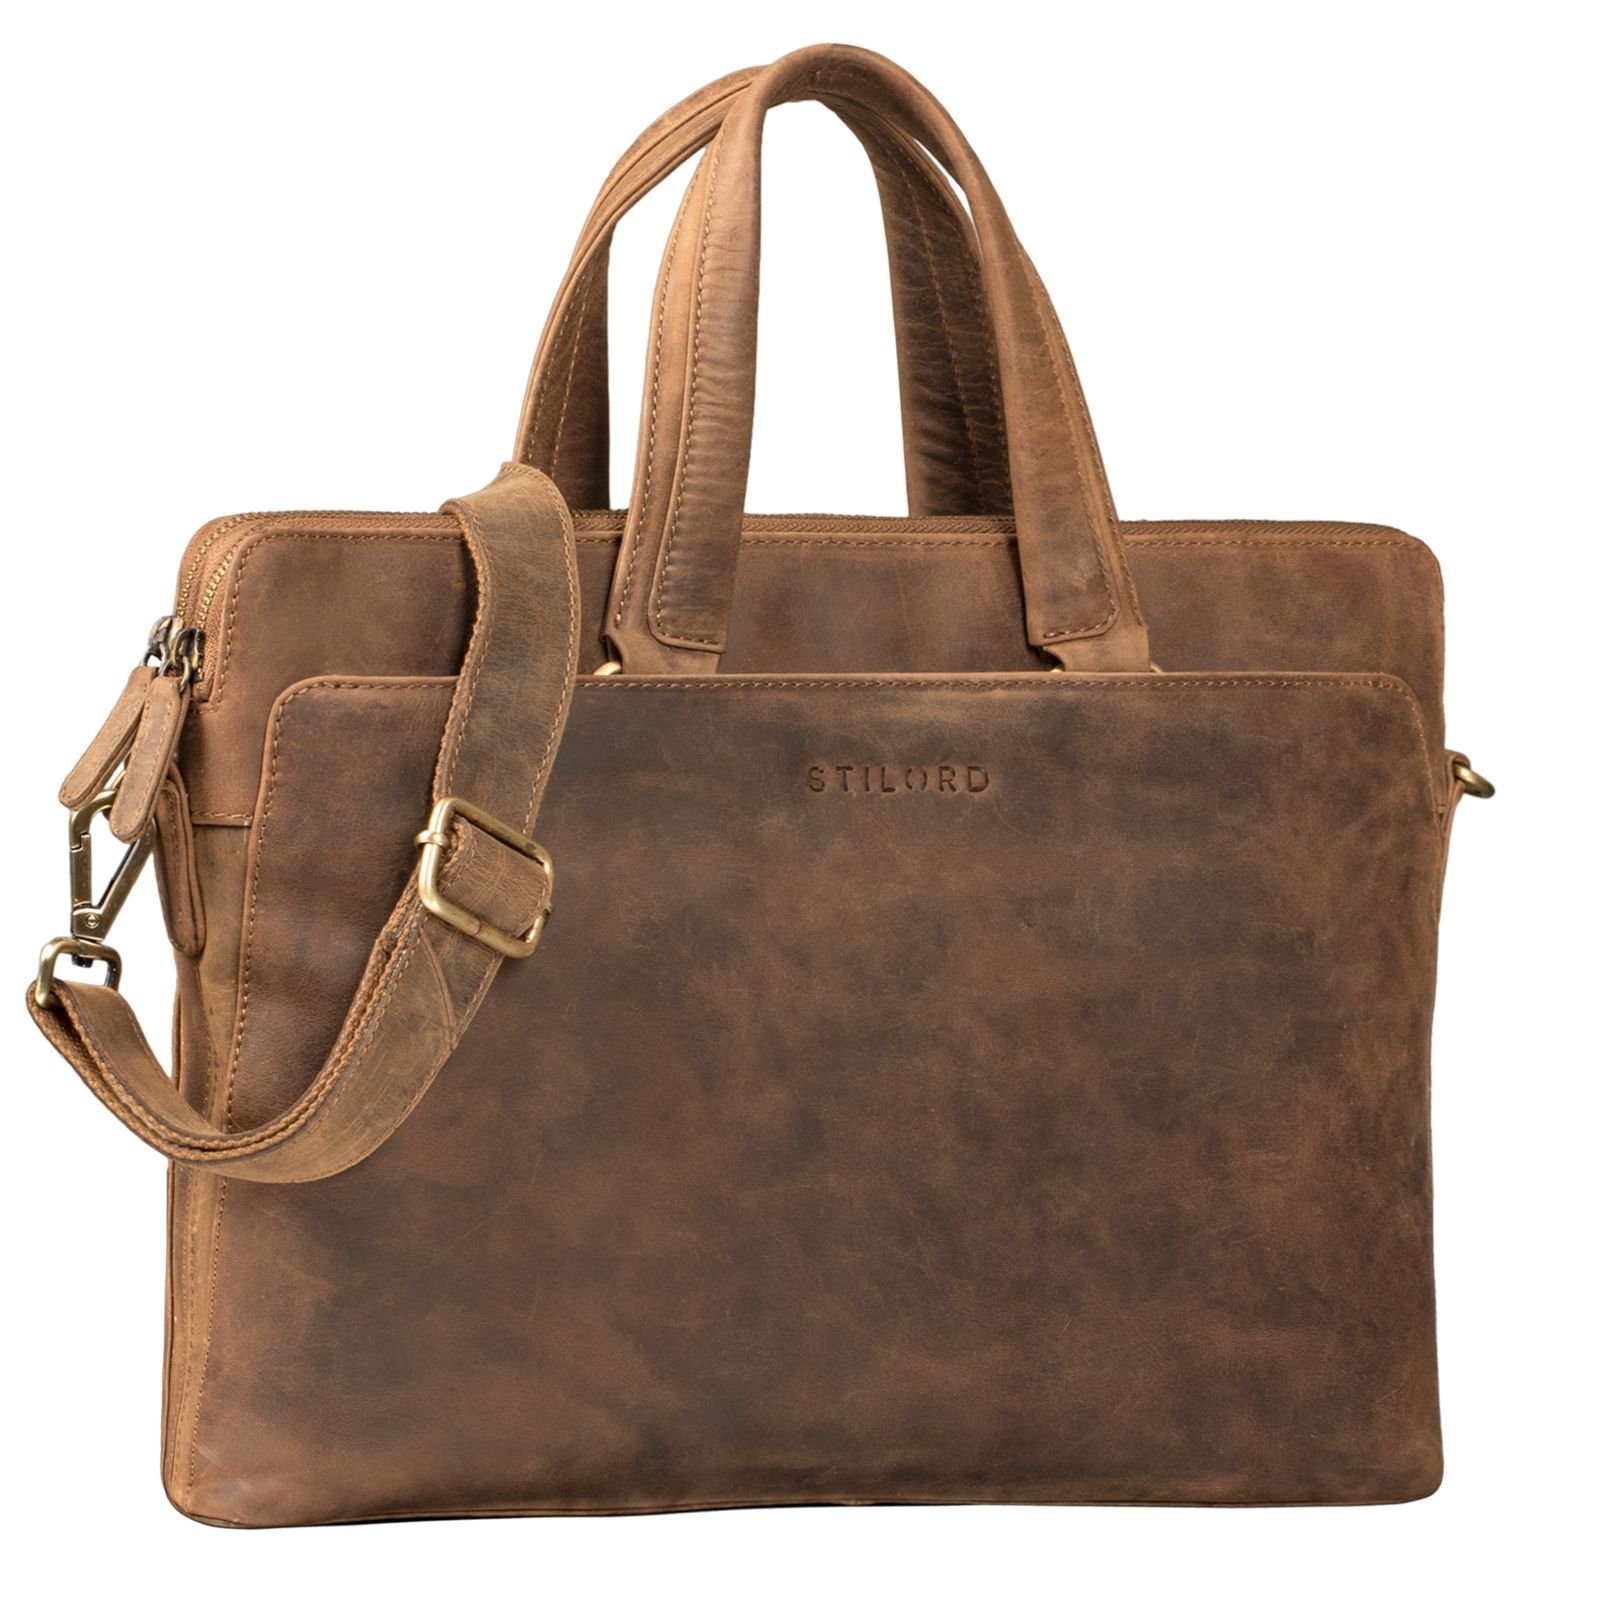 STILORD Handtasche "Kylie" Business Ledertasche Damen mittel - braun | Handtaschen